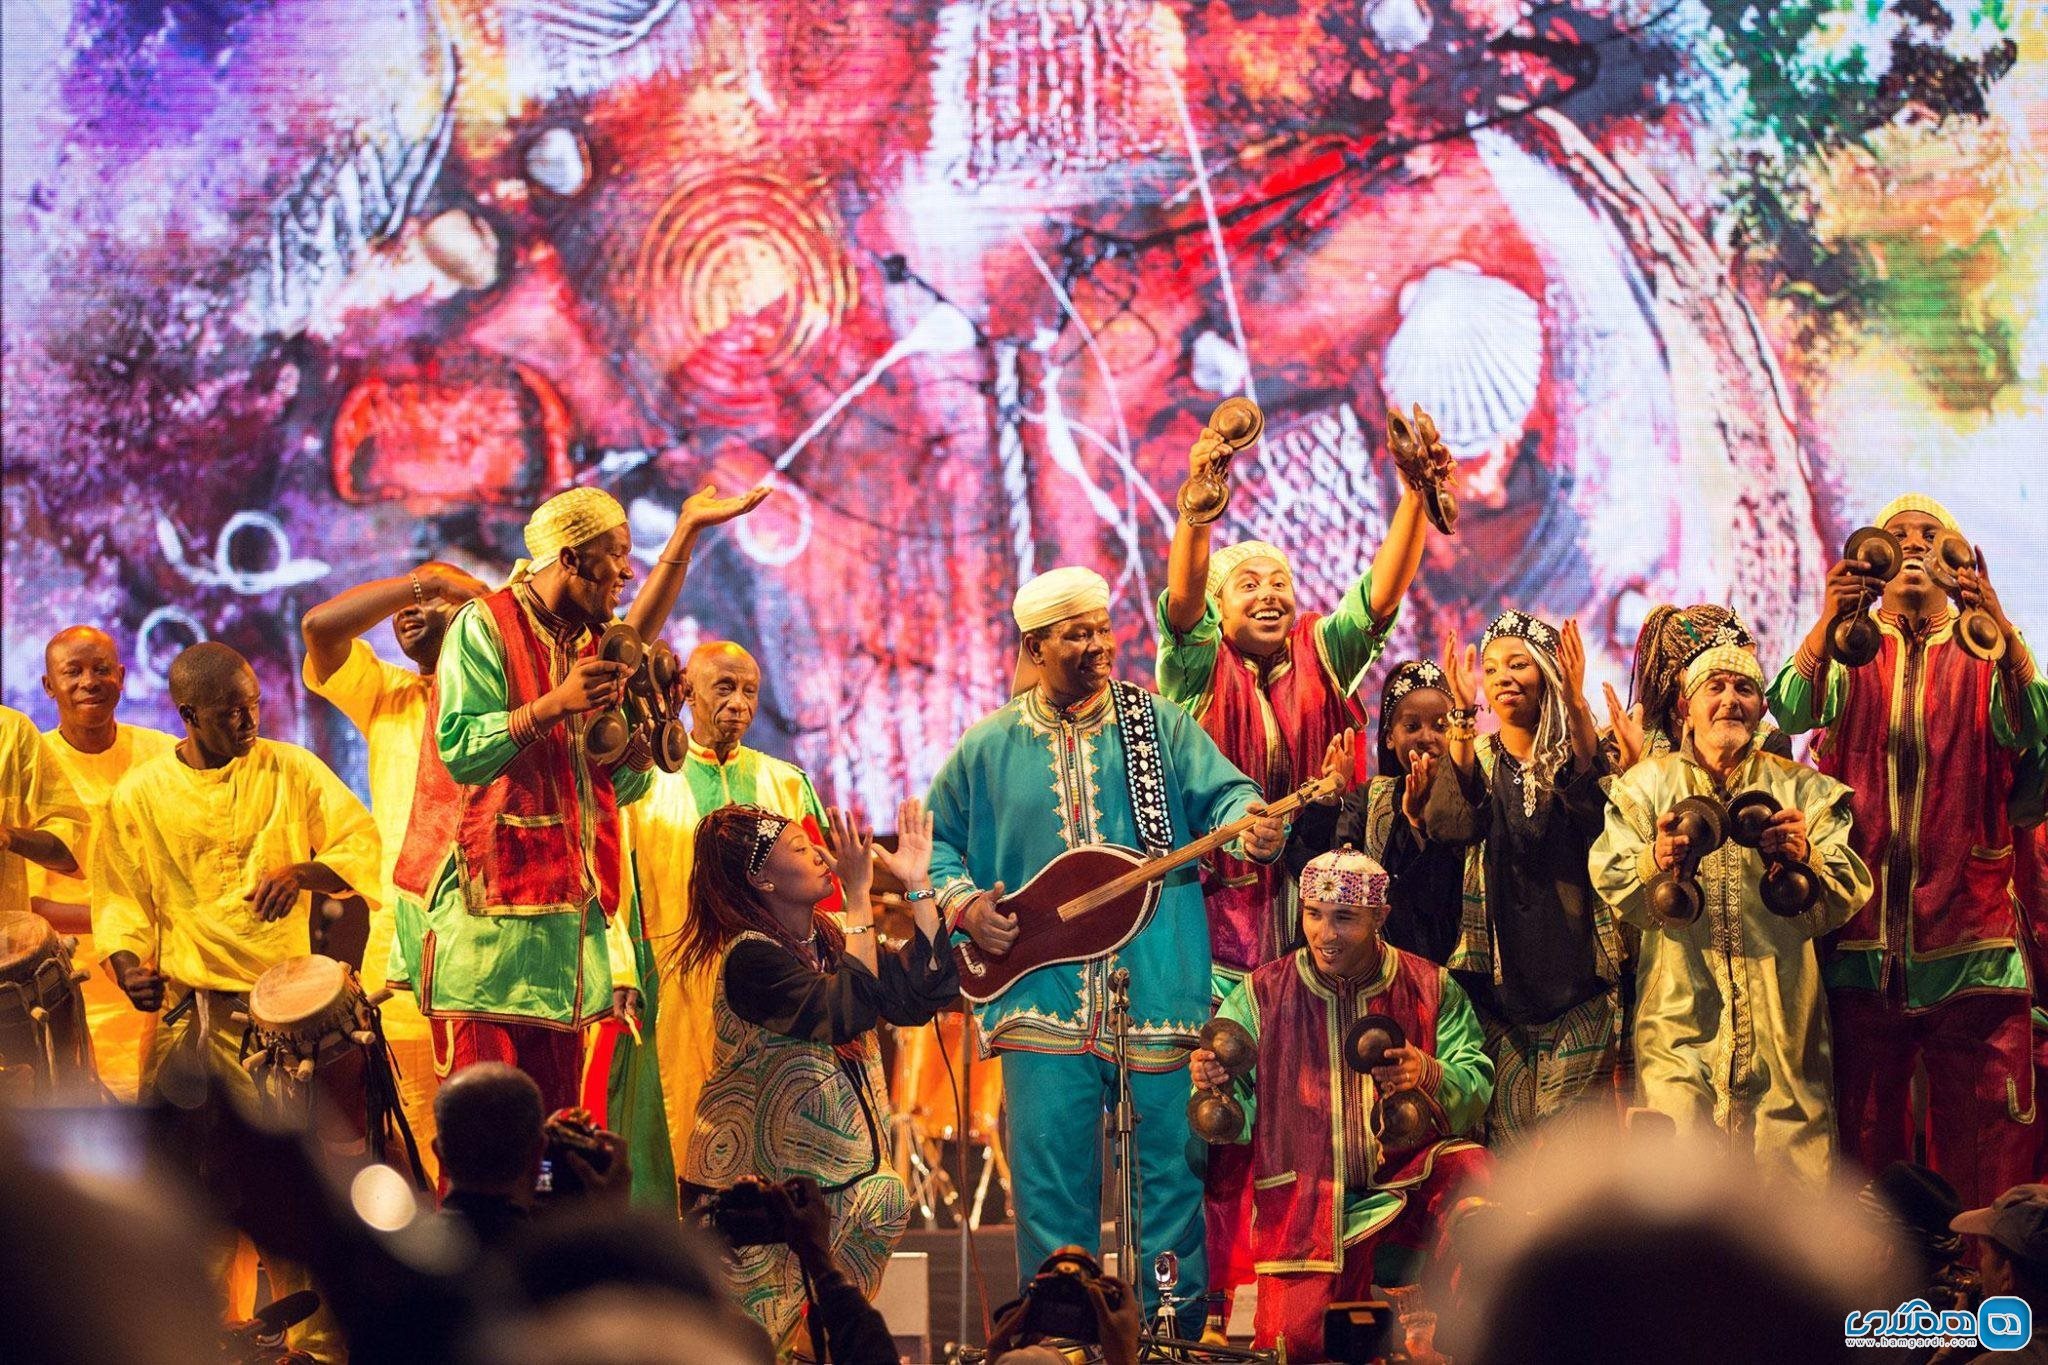 منتظر یک جشنواره موسیقی و فرهنگ مراکشی باشید